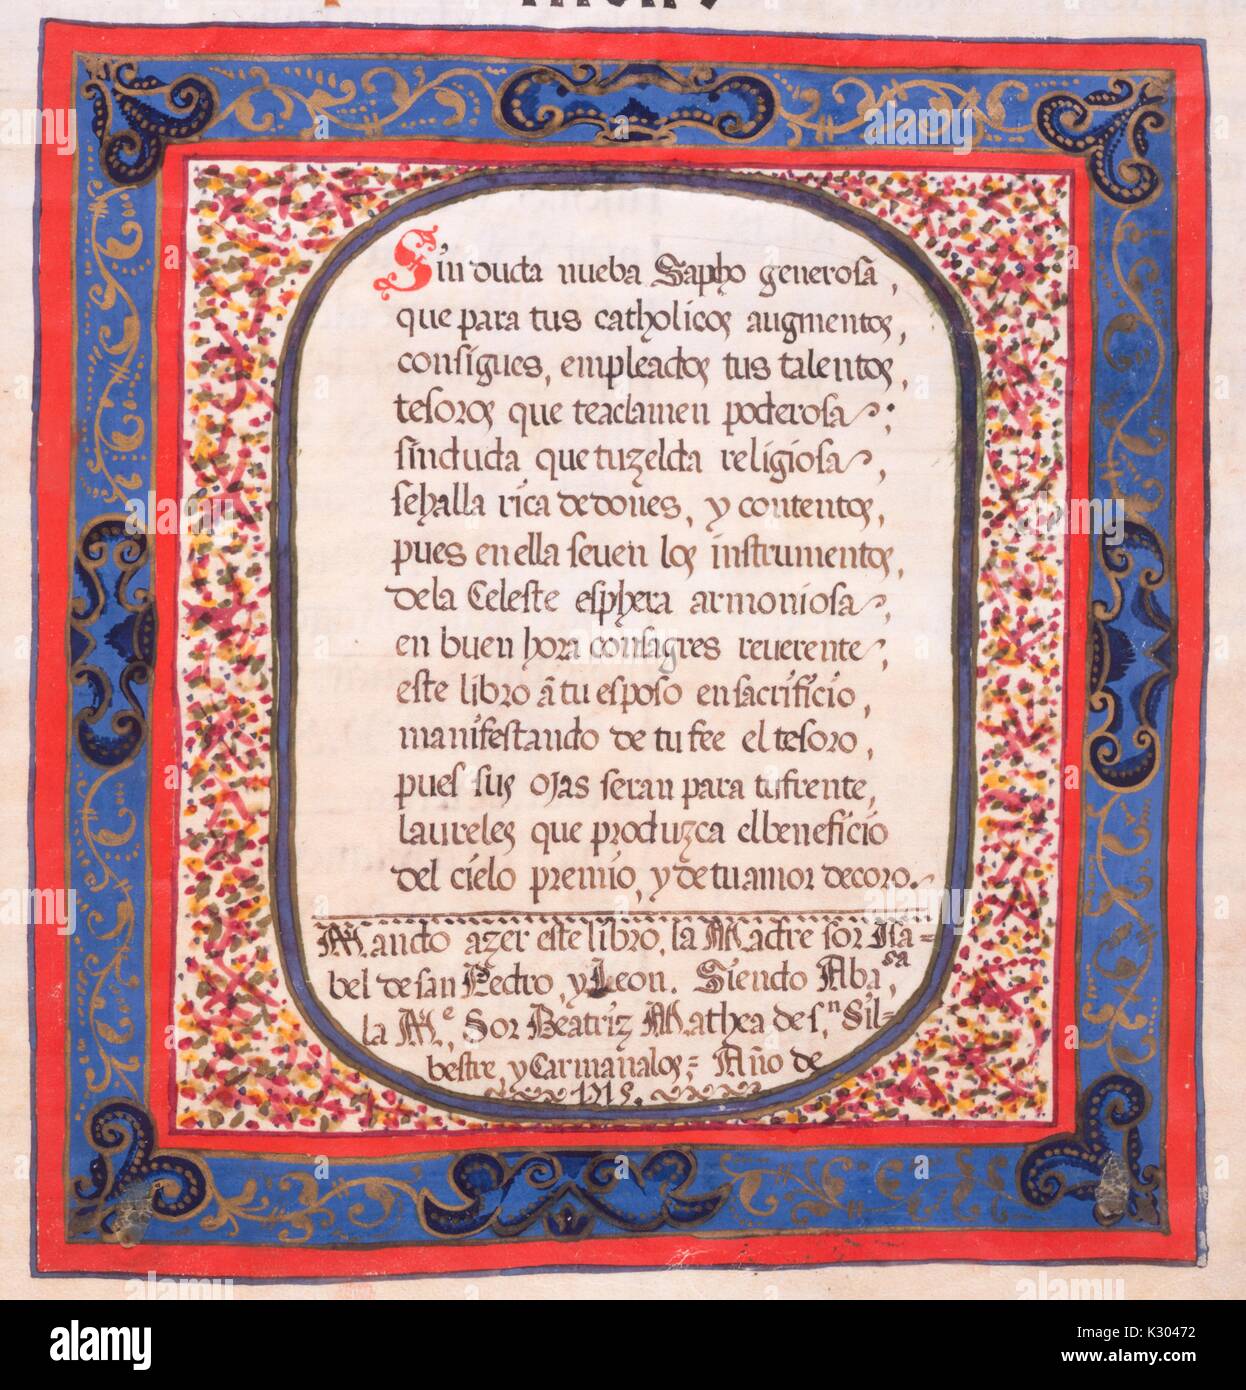 Bilderhandschrift Seite angezeigte Text von einem reich verzierten Rahmen umgeben, von einem lateinischen Handschrift in Spanien im 18. Jahrhundert erstellt, 1715. Stockfoto